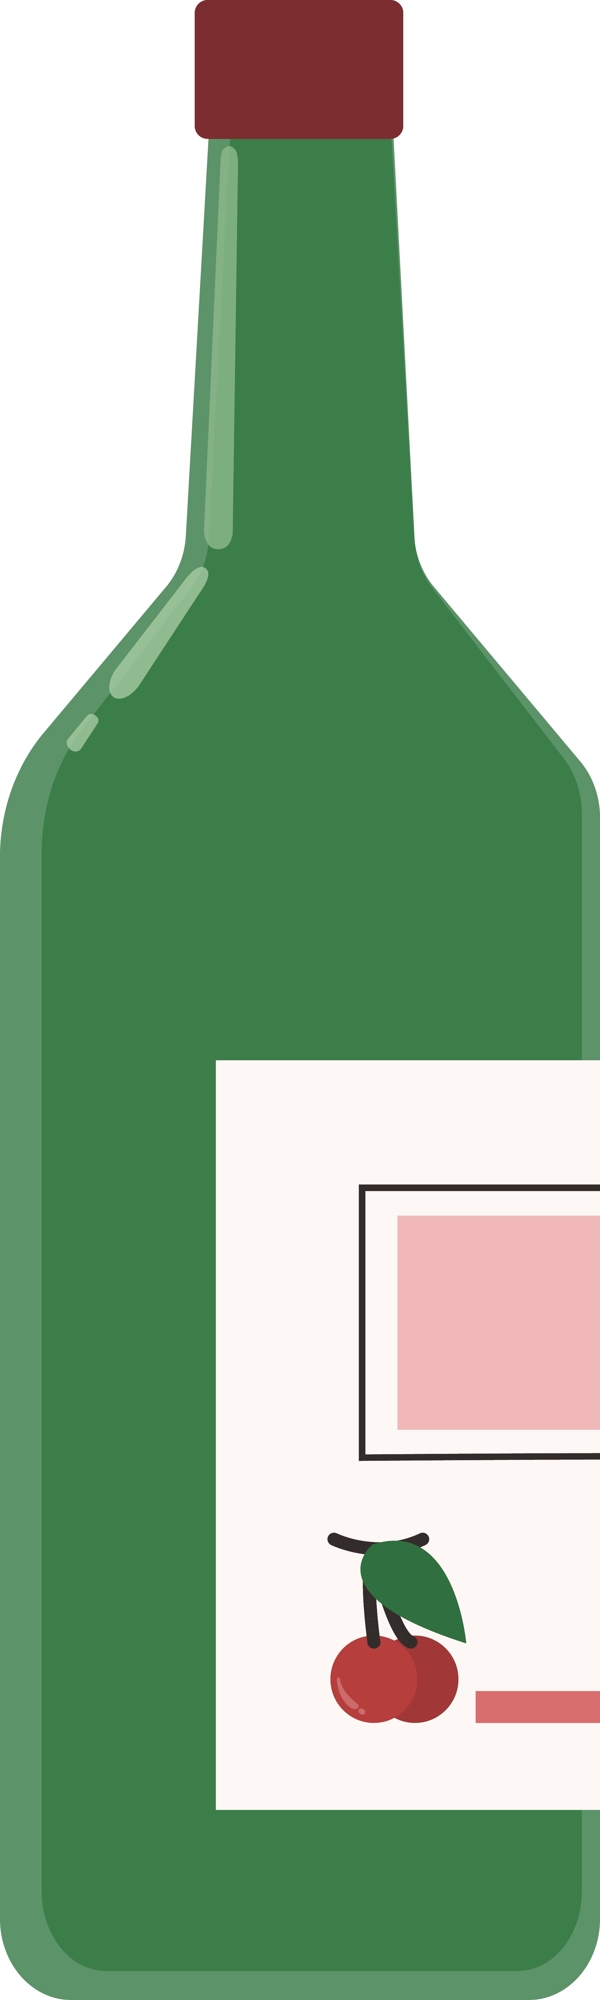 酒瓶图标元素设计模版